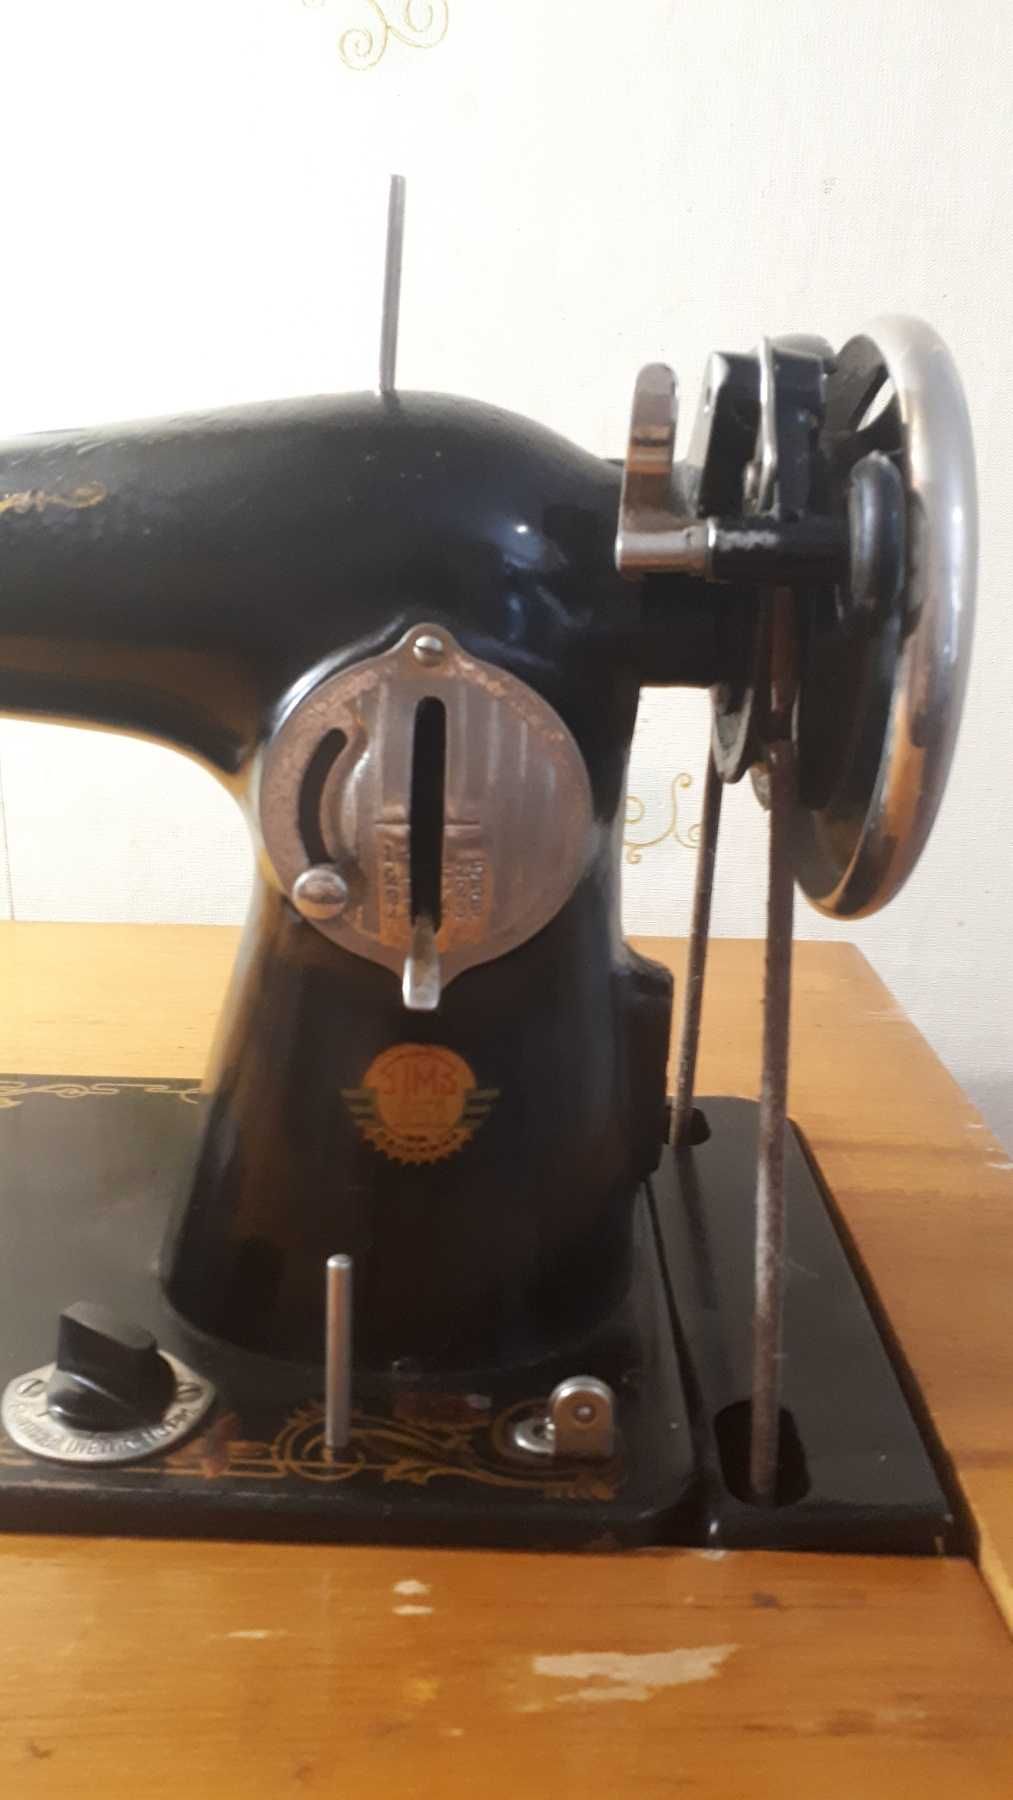 Швейная машинка МПЗ им. Калинина (Подолка) с тумбой и ножным приводом